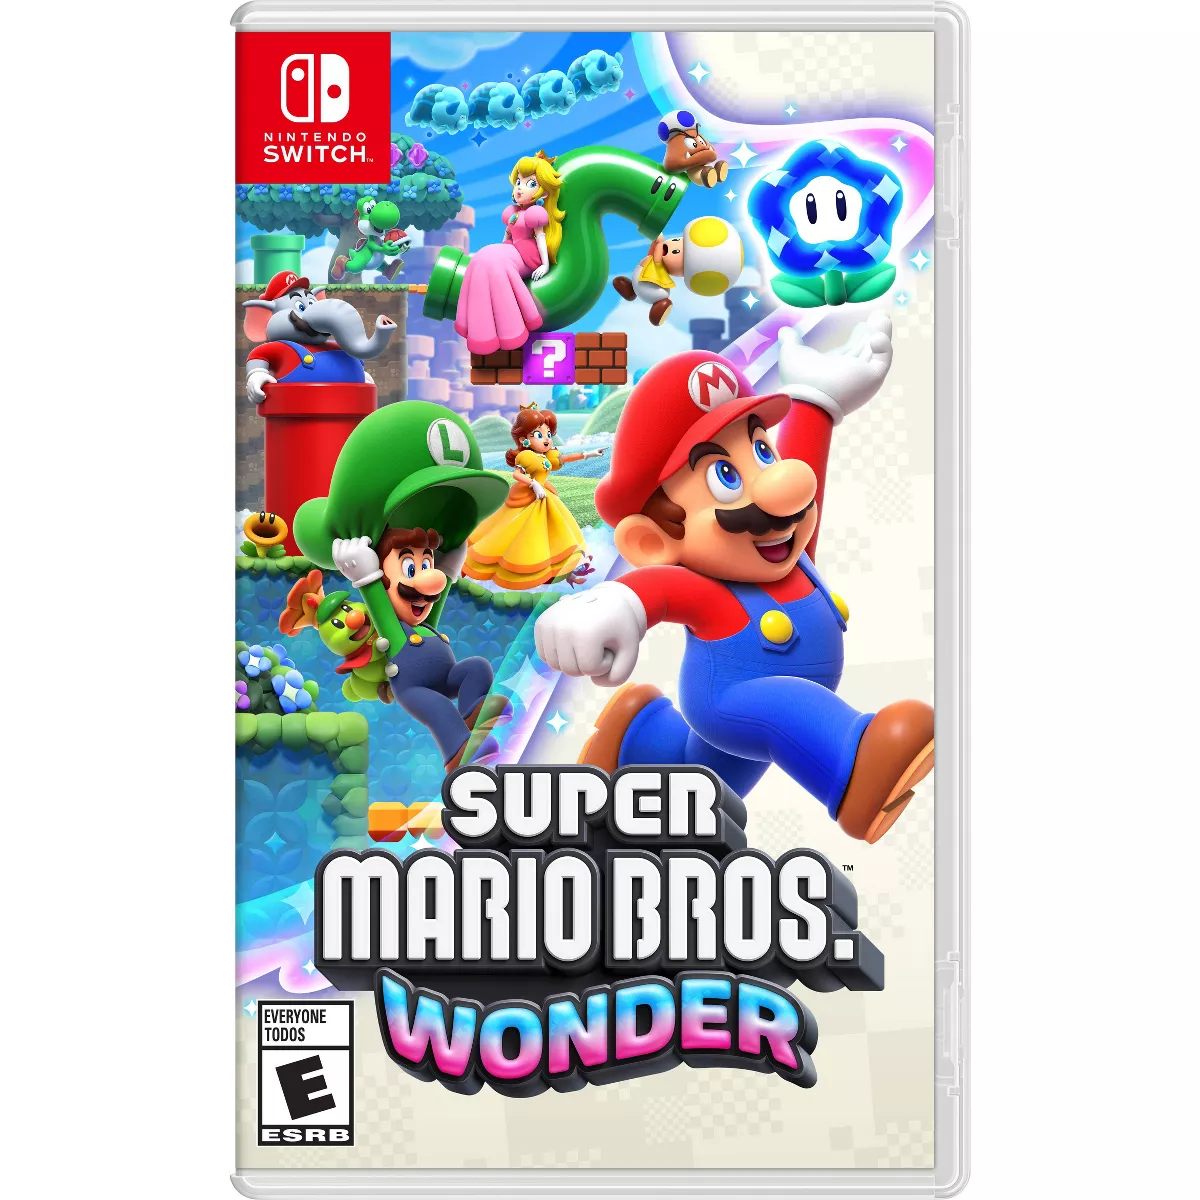 Super Mario Bros. wonder Cover Art